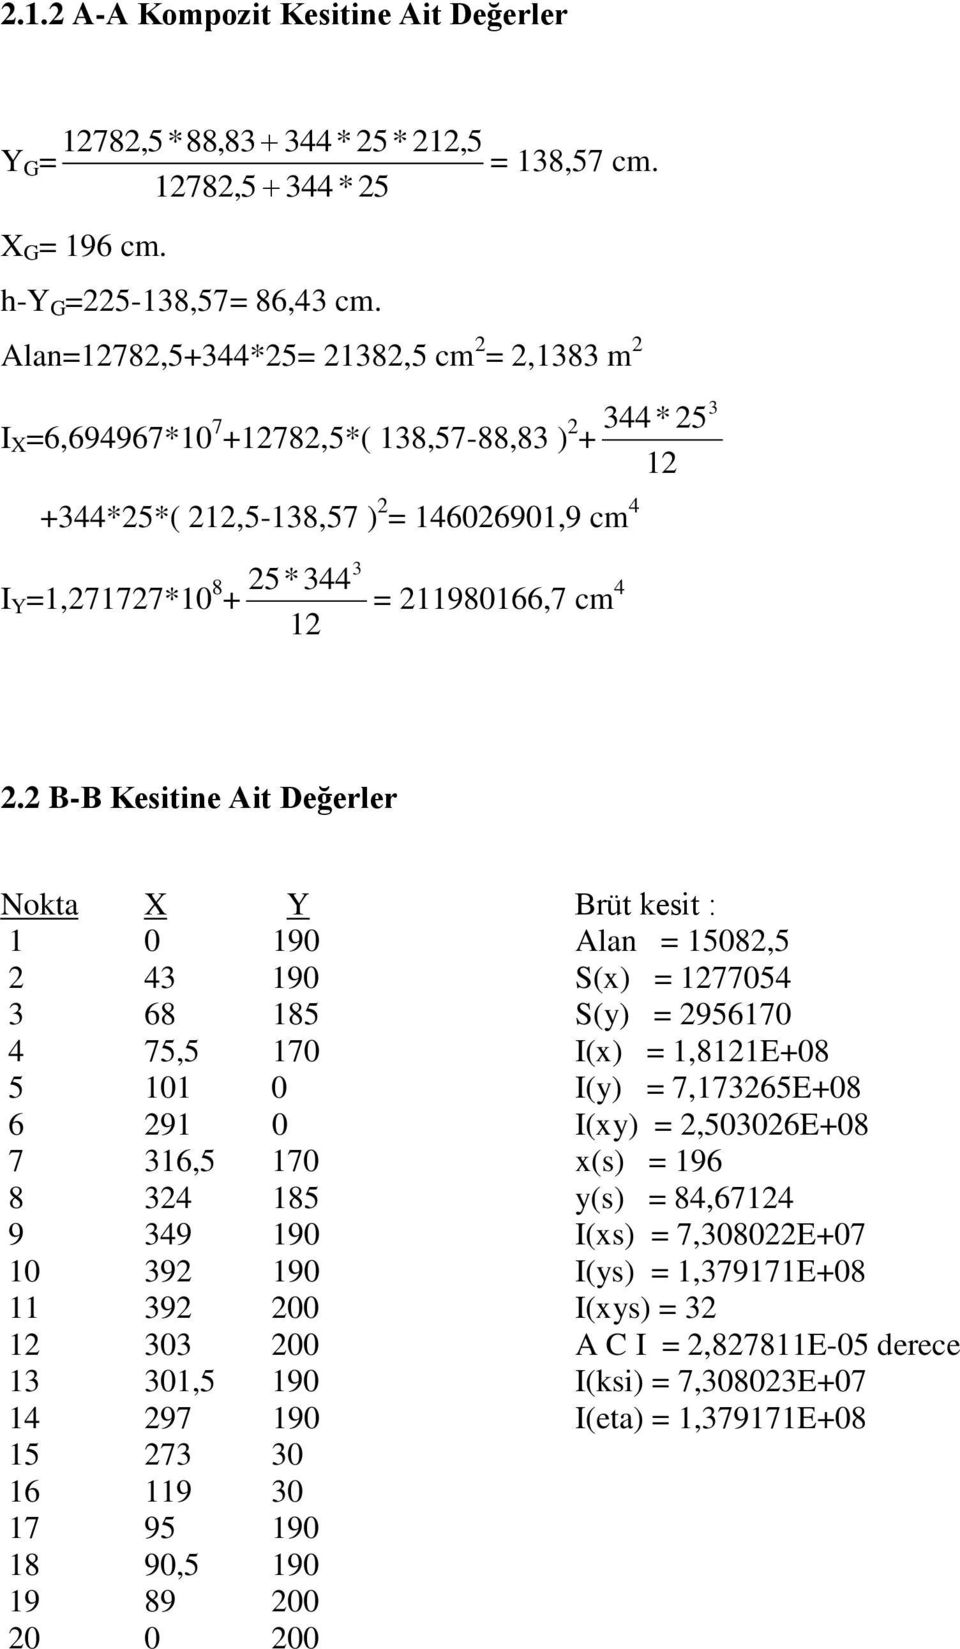 B-B Kesitine Ait Değerler Nokta X Y Brüt kesit : 1 0 190 Alan = 1508,5 43 190 S(x) = 177054 3 68 185 S(y) = 956170 4 75,5 170 I(x) = 1,811E+08 5 101 0 I(y) = 7,17365E+08 6 91 0 I(xy) =,50306E+08 7